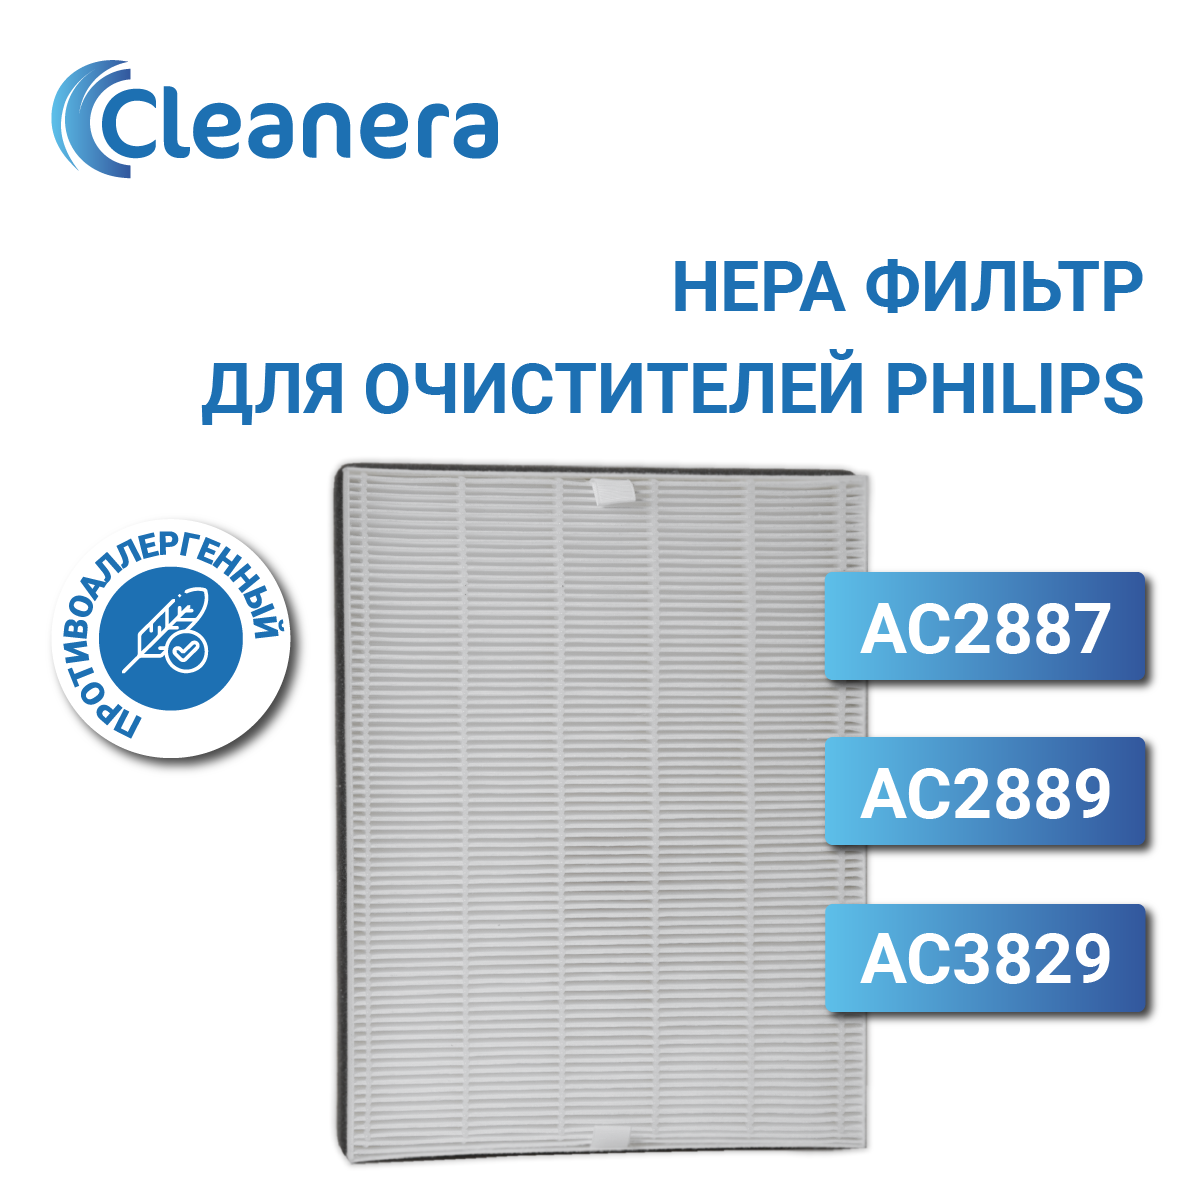 Фильтр для очистителя воздуха антиаллергенный для Philips AC2887, AC2889, AC3829 (FY2422/30)